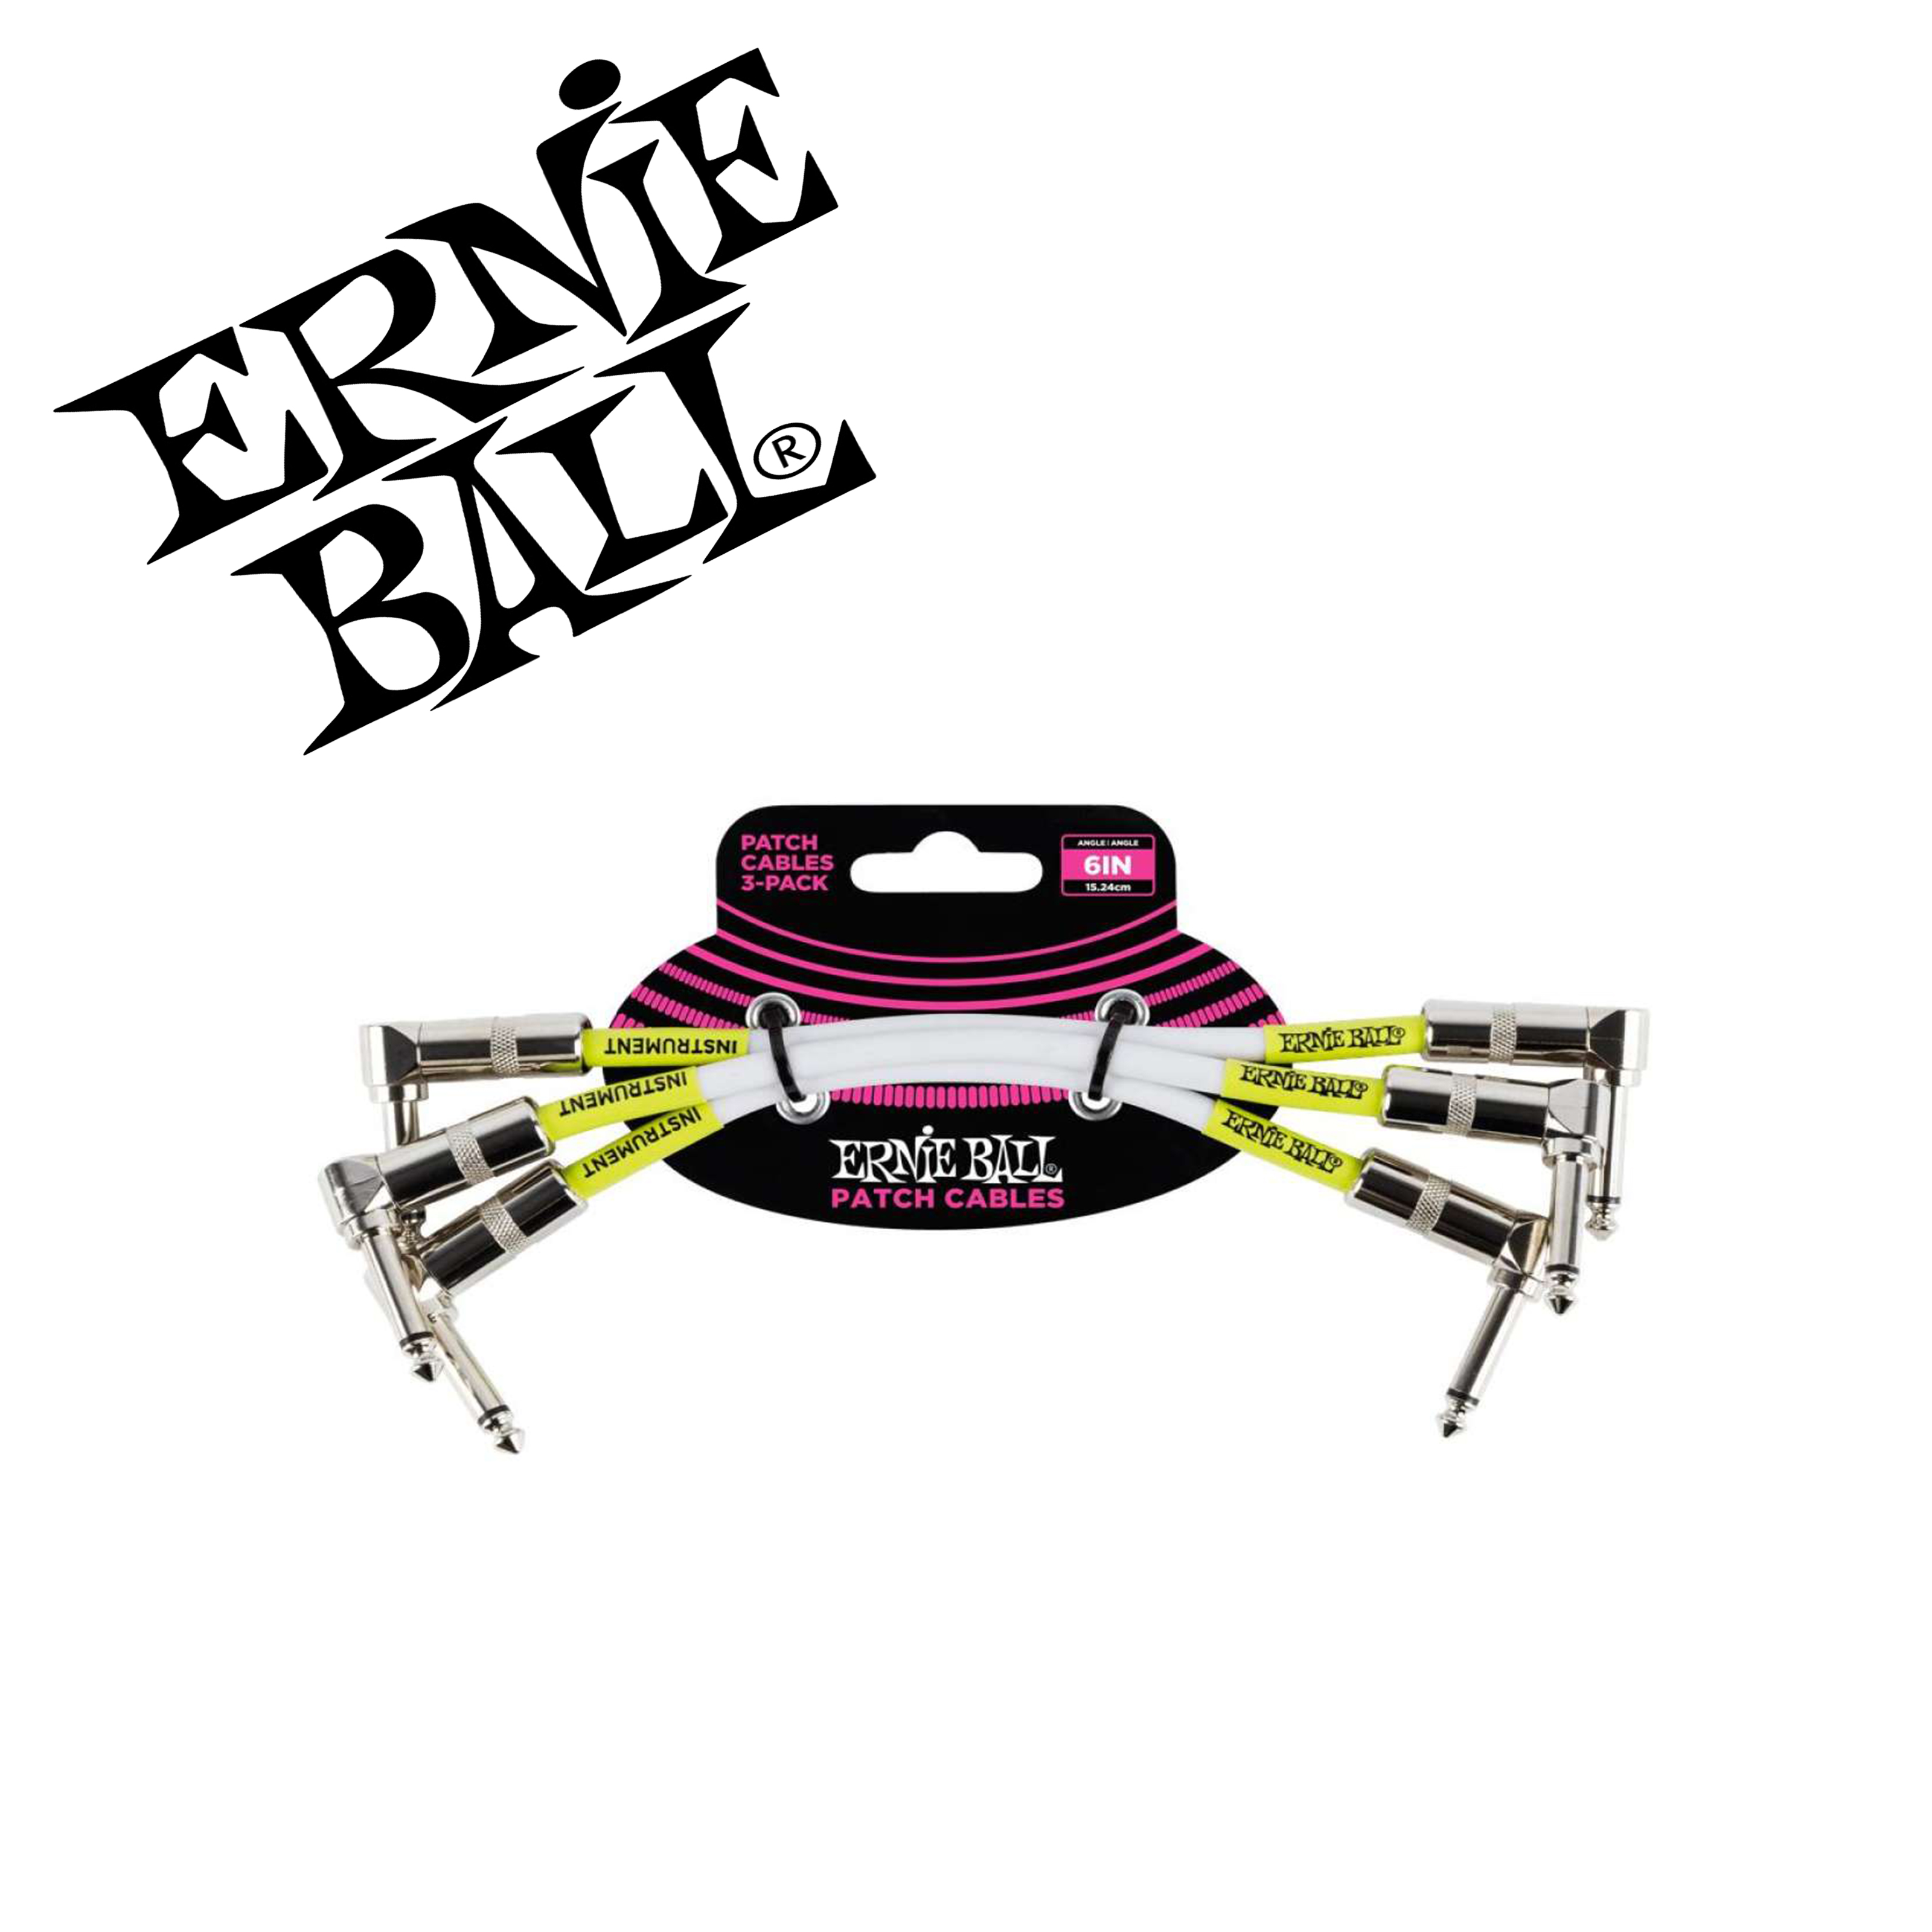 Ernie Ball สายพ่วงเอฟเฟค สายแจ็คต่อเอฟเฟค ยาว 15 ซม หัวงอหัวงอ 1 แพ็คมี 3 เส้น Black 